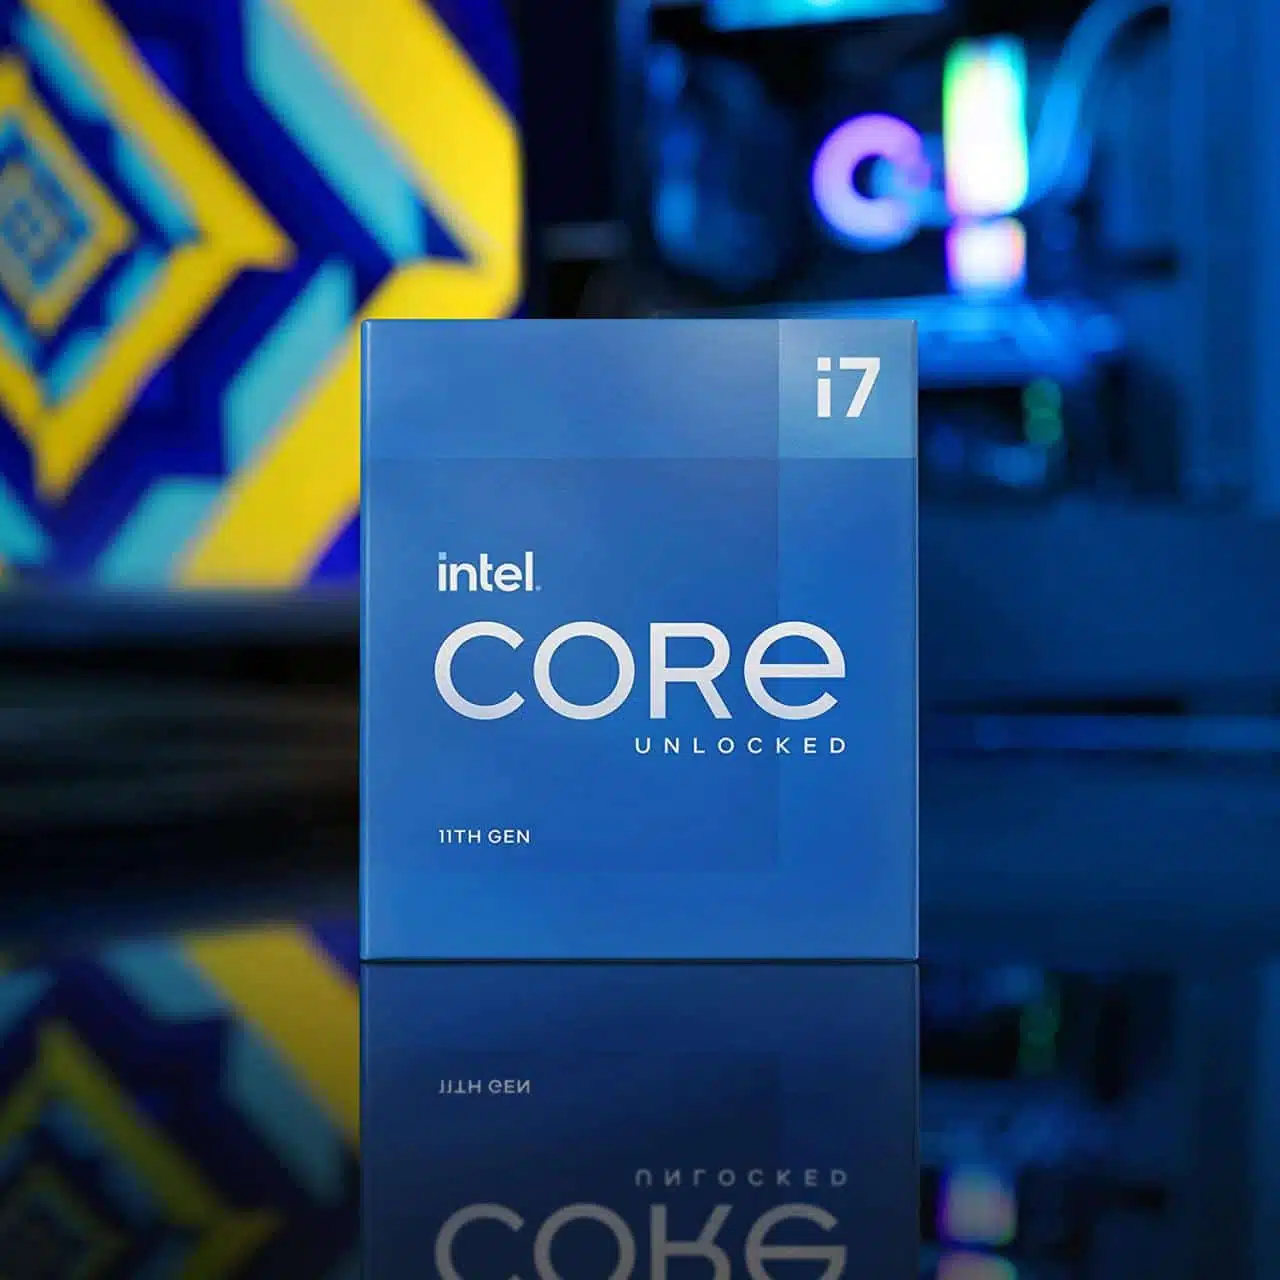 Intel Core i7-11700K có thể ép xung CPU lên mức xung nhịp cao hơn vì là dòng CPU K